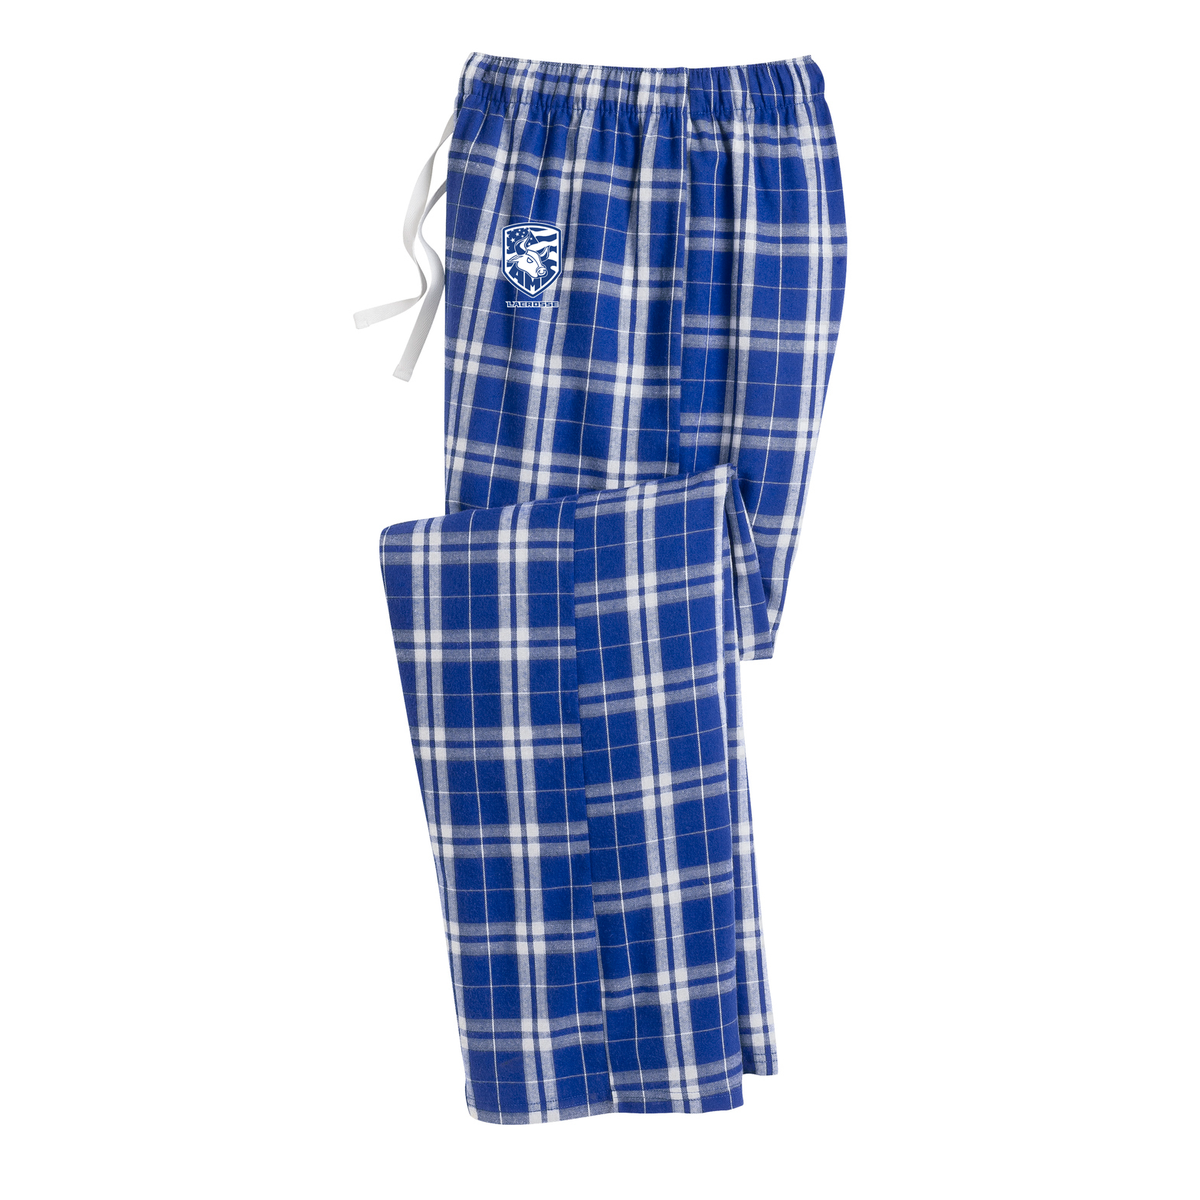 Accompsett Lacrosse Plaid Pajama Pants